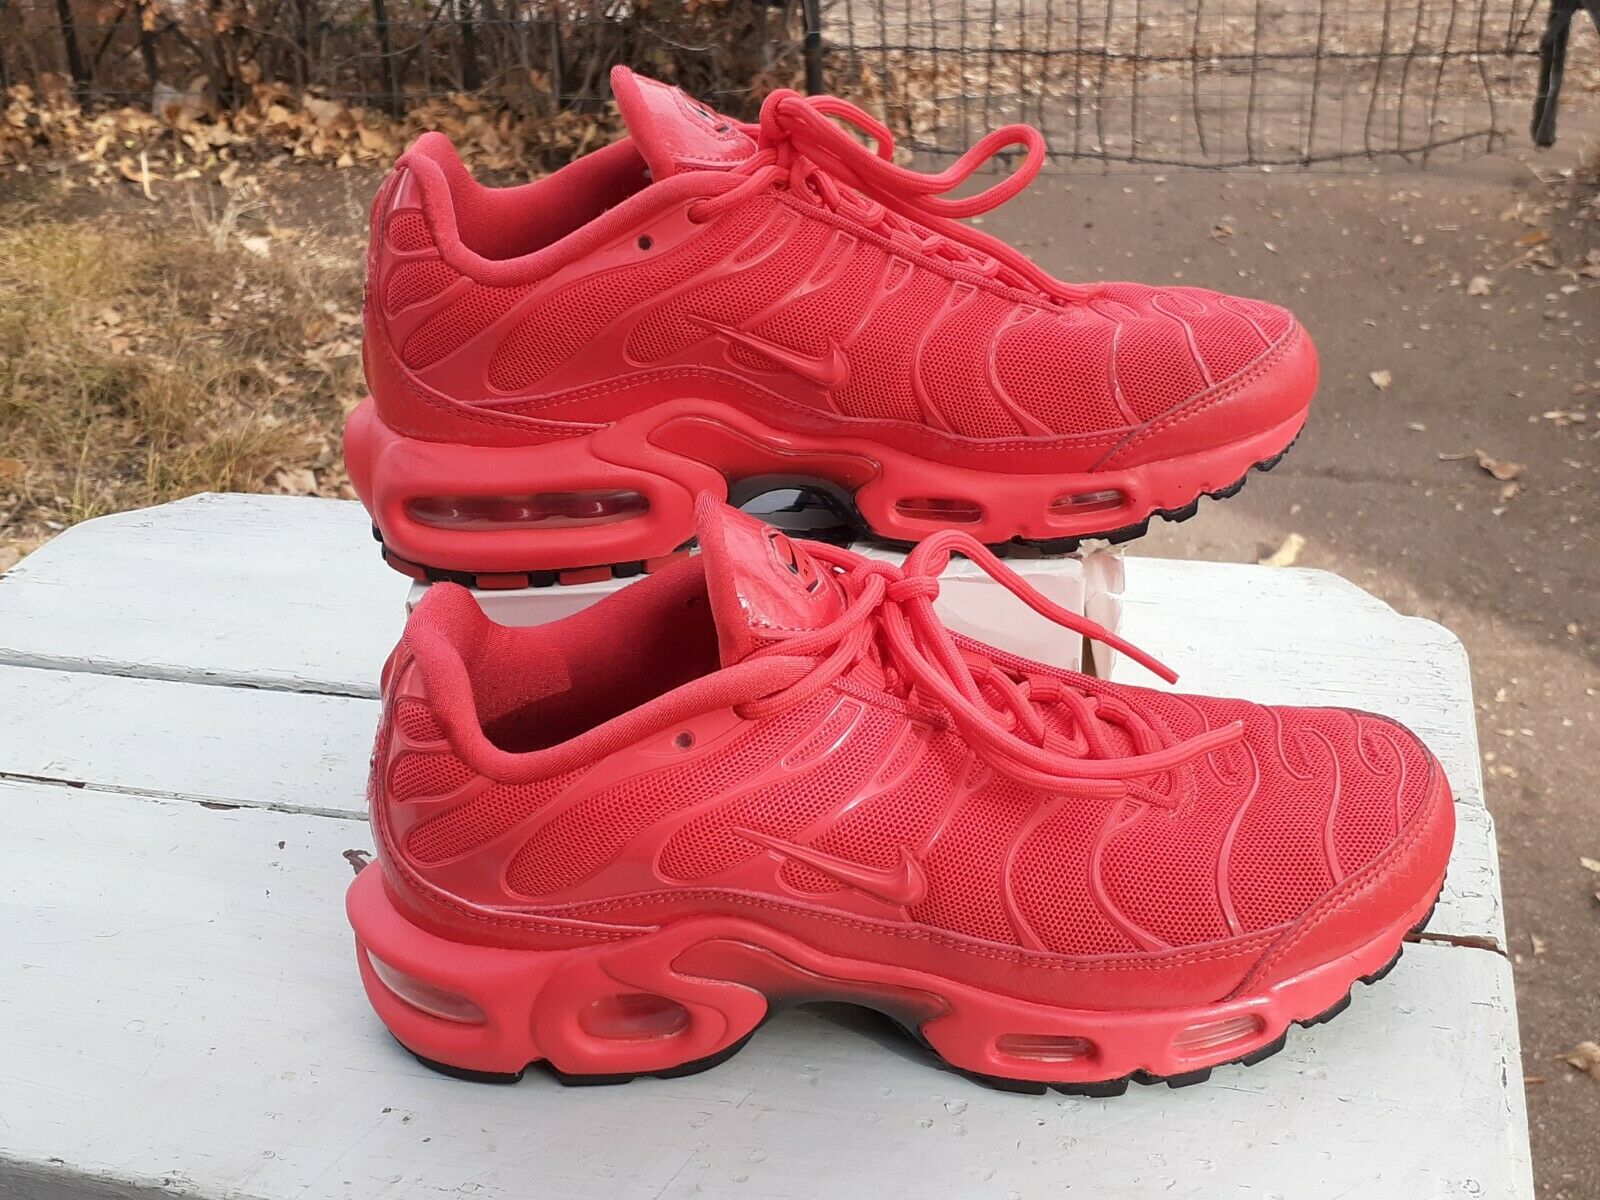 Nike Air Max Plus TN Light Crimson Red Women's running shoes size 6 AV8424-600